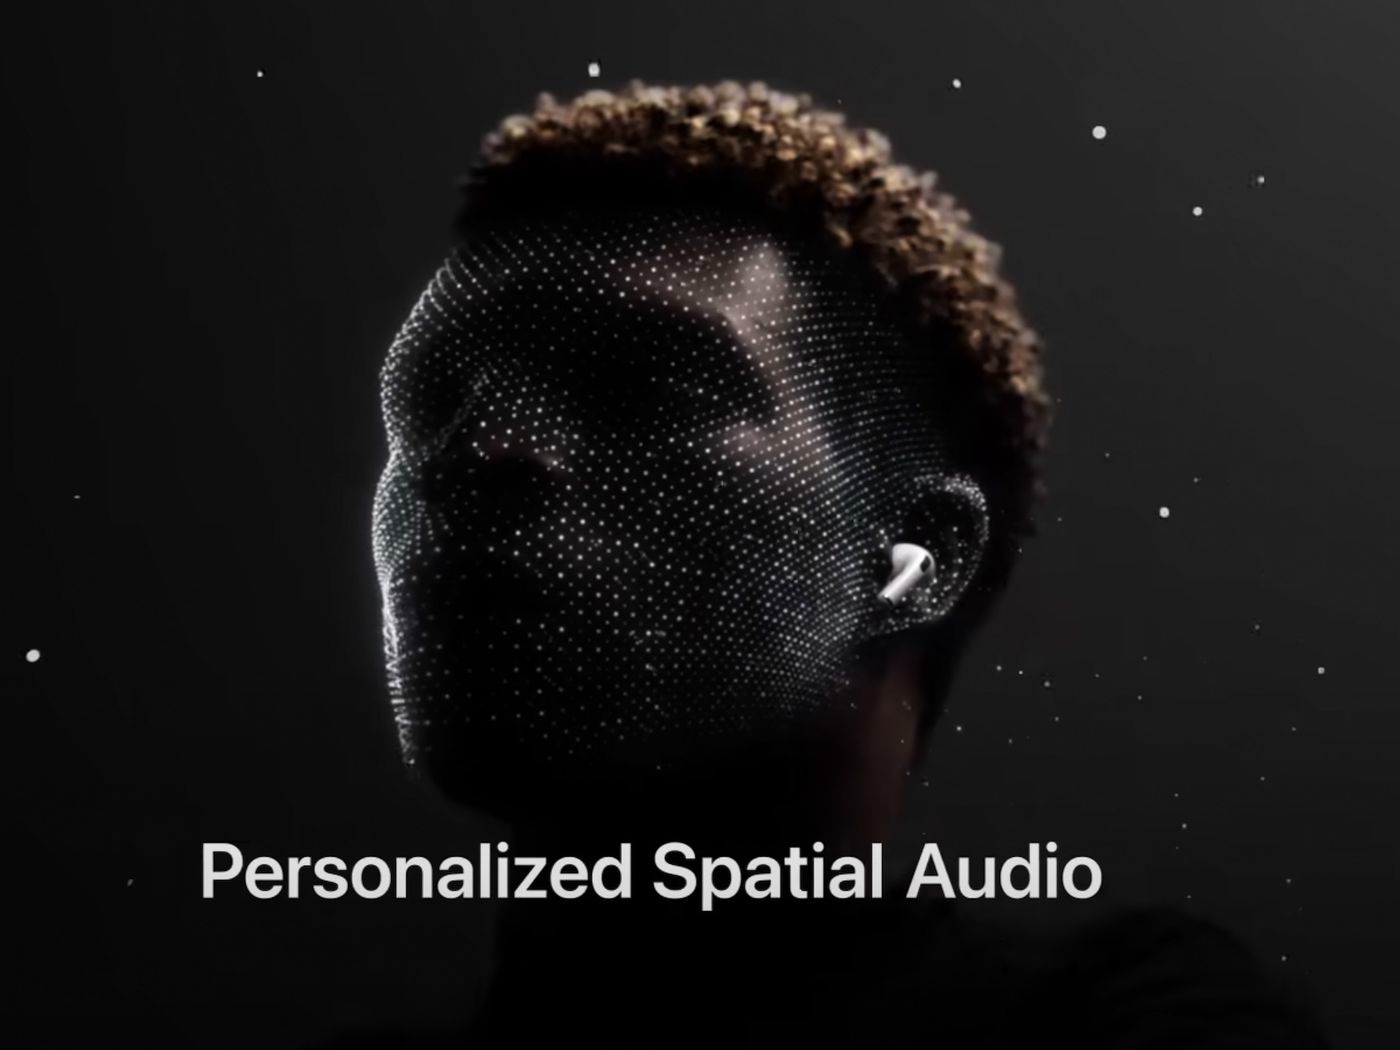 La configuración del audio espacial personalizado requiere del escaneo de la forma de la cabeza del usuario. (The Verge)